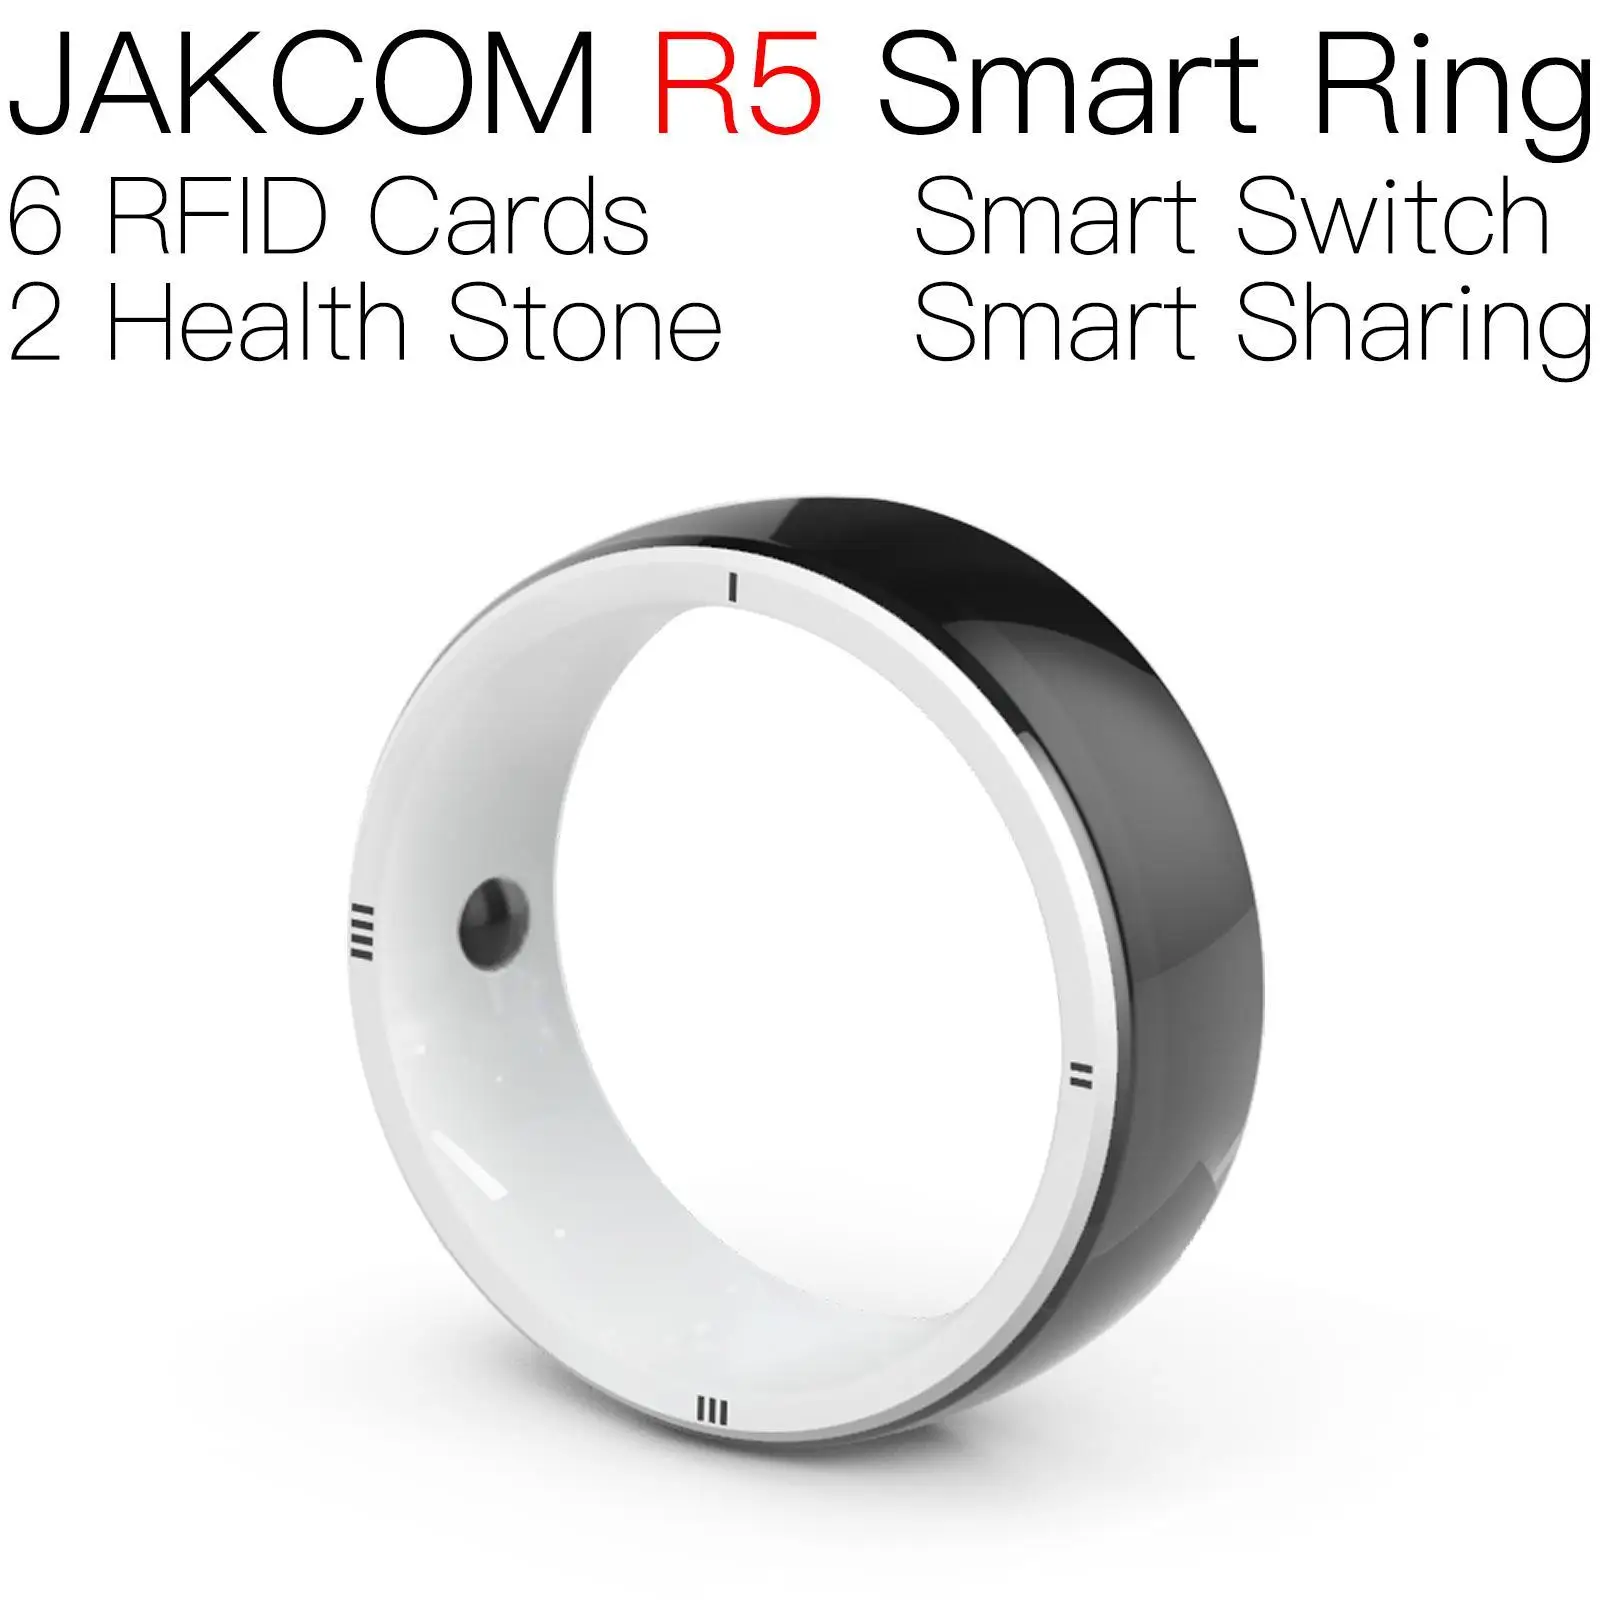 

Умное кольцо JAKCOM R5, красивое, чем монета, rfid youtubbed premium 125 кГц, перезаписываемая этикетка, местный склад, стандартная самоклеящаяся бирка